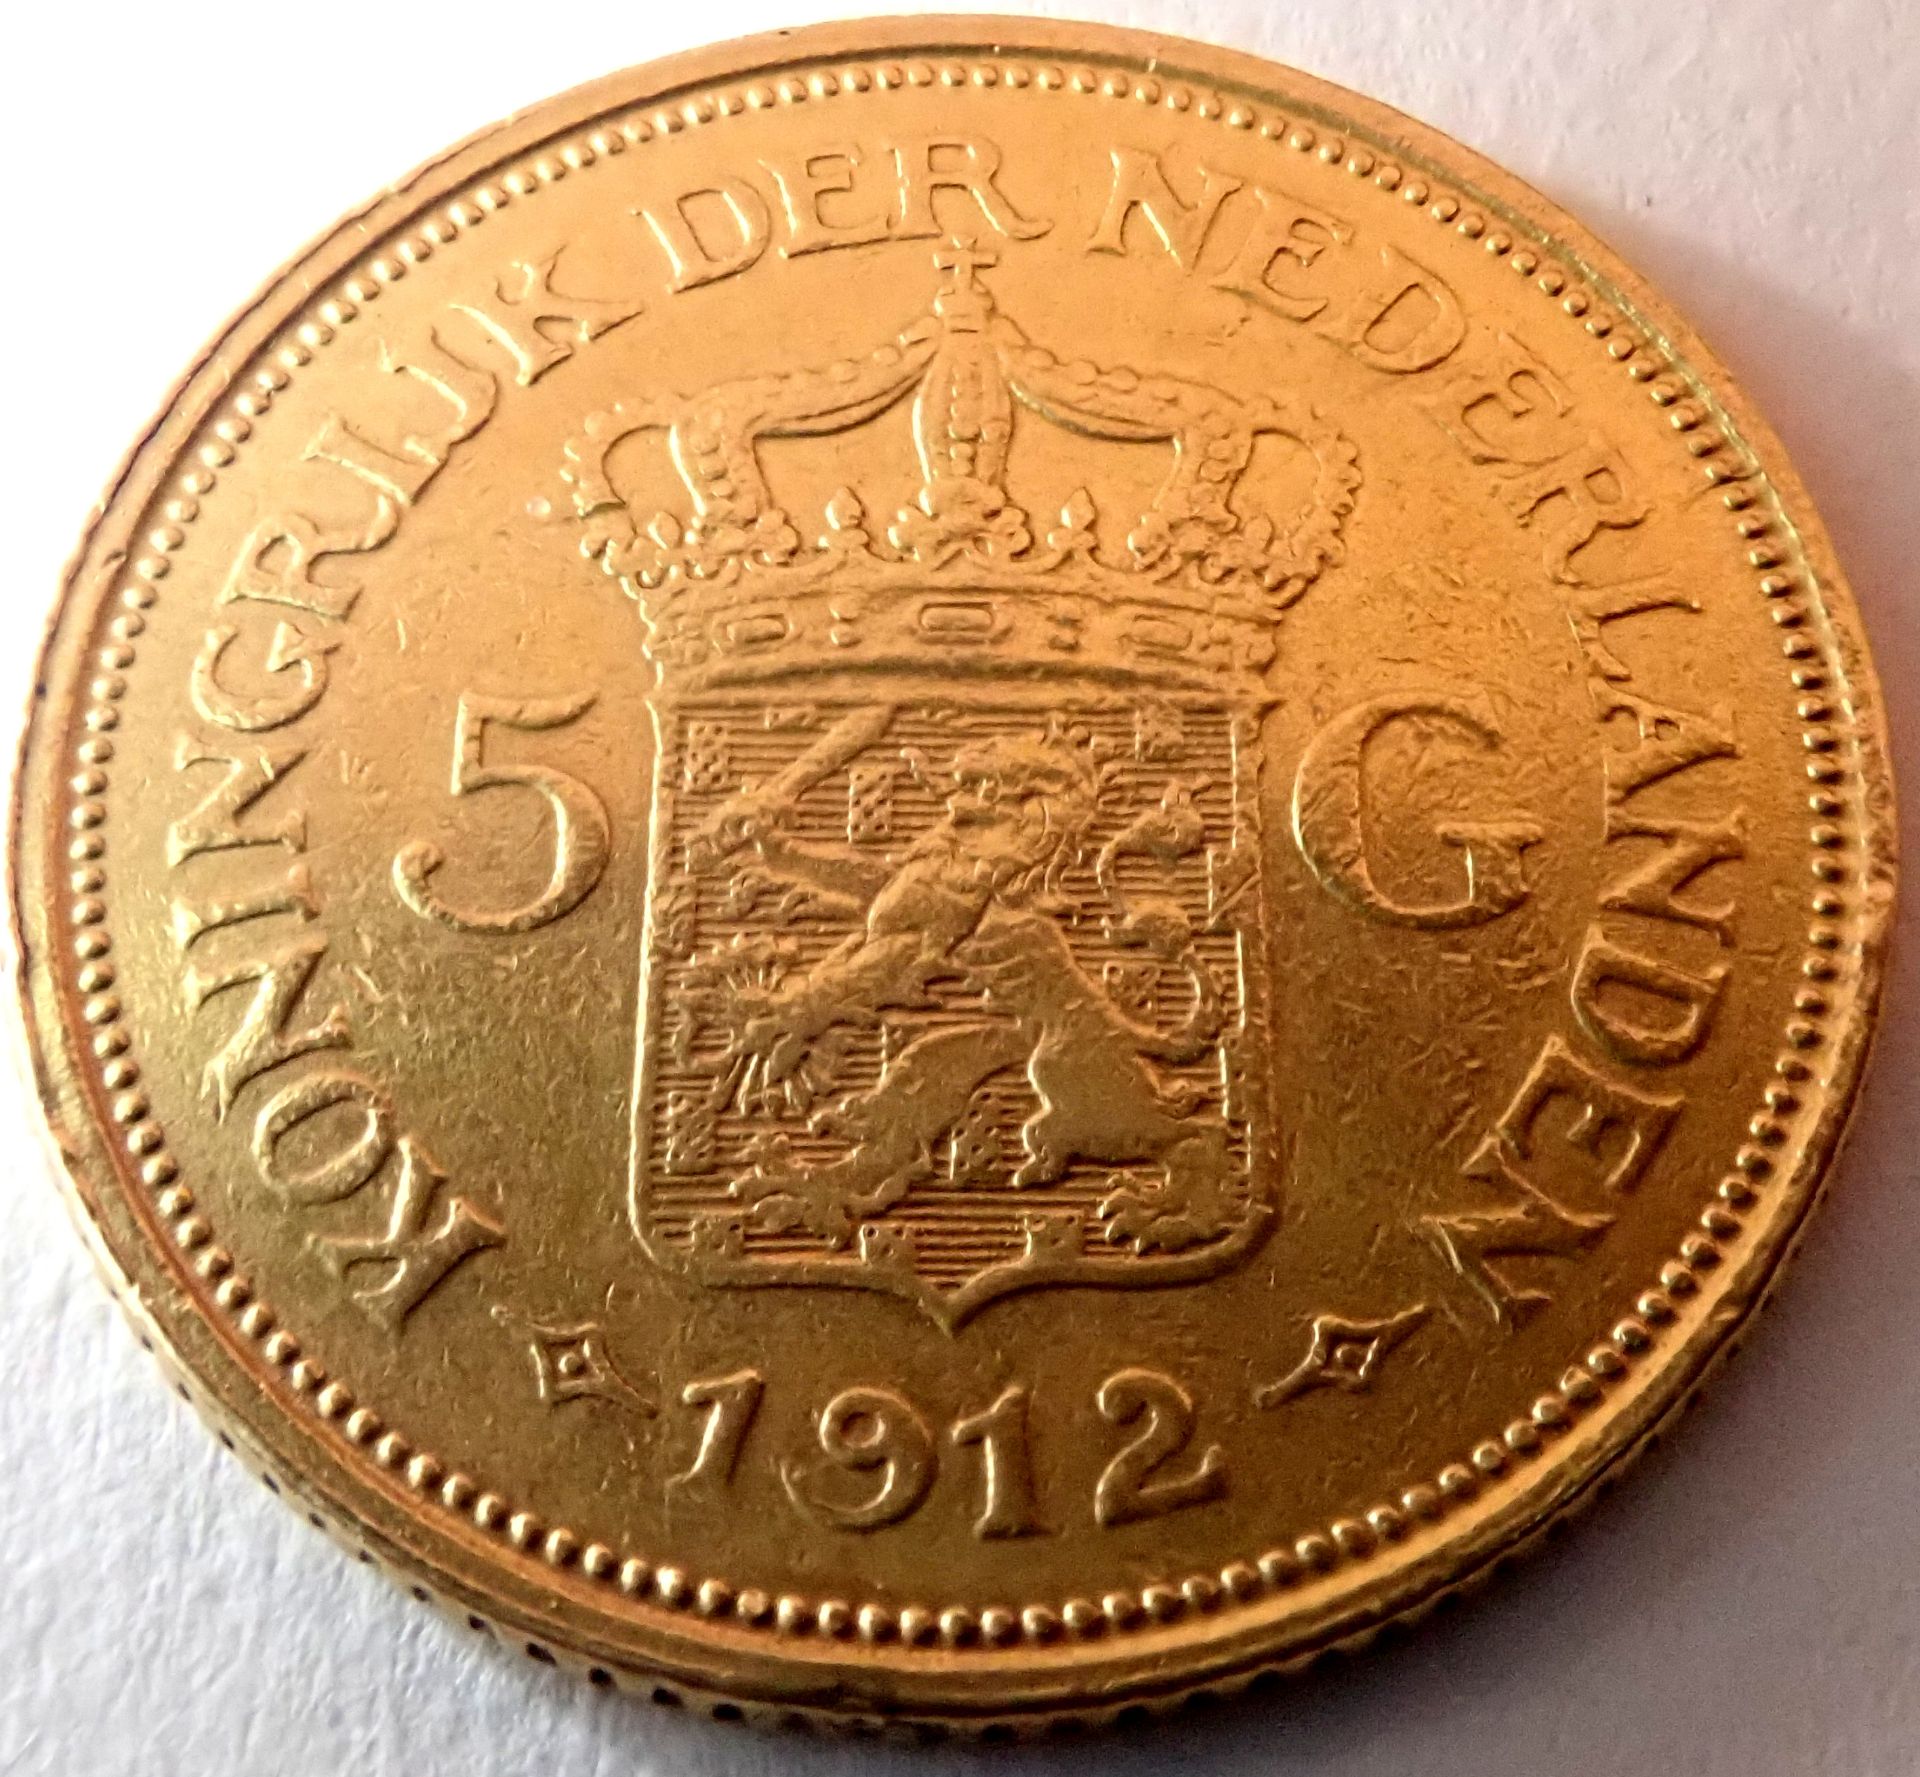 5 Gulden - Wilhemina. 1912 - Image 2 of 2